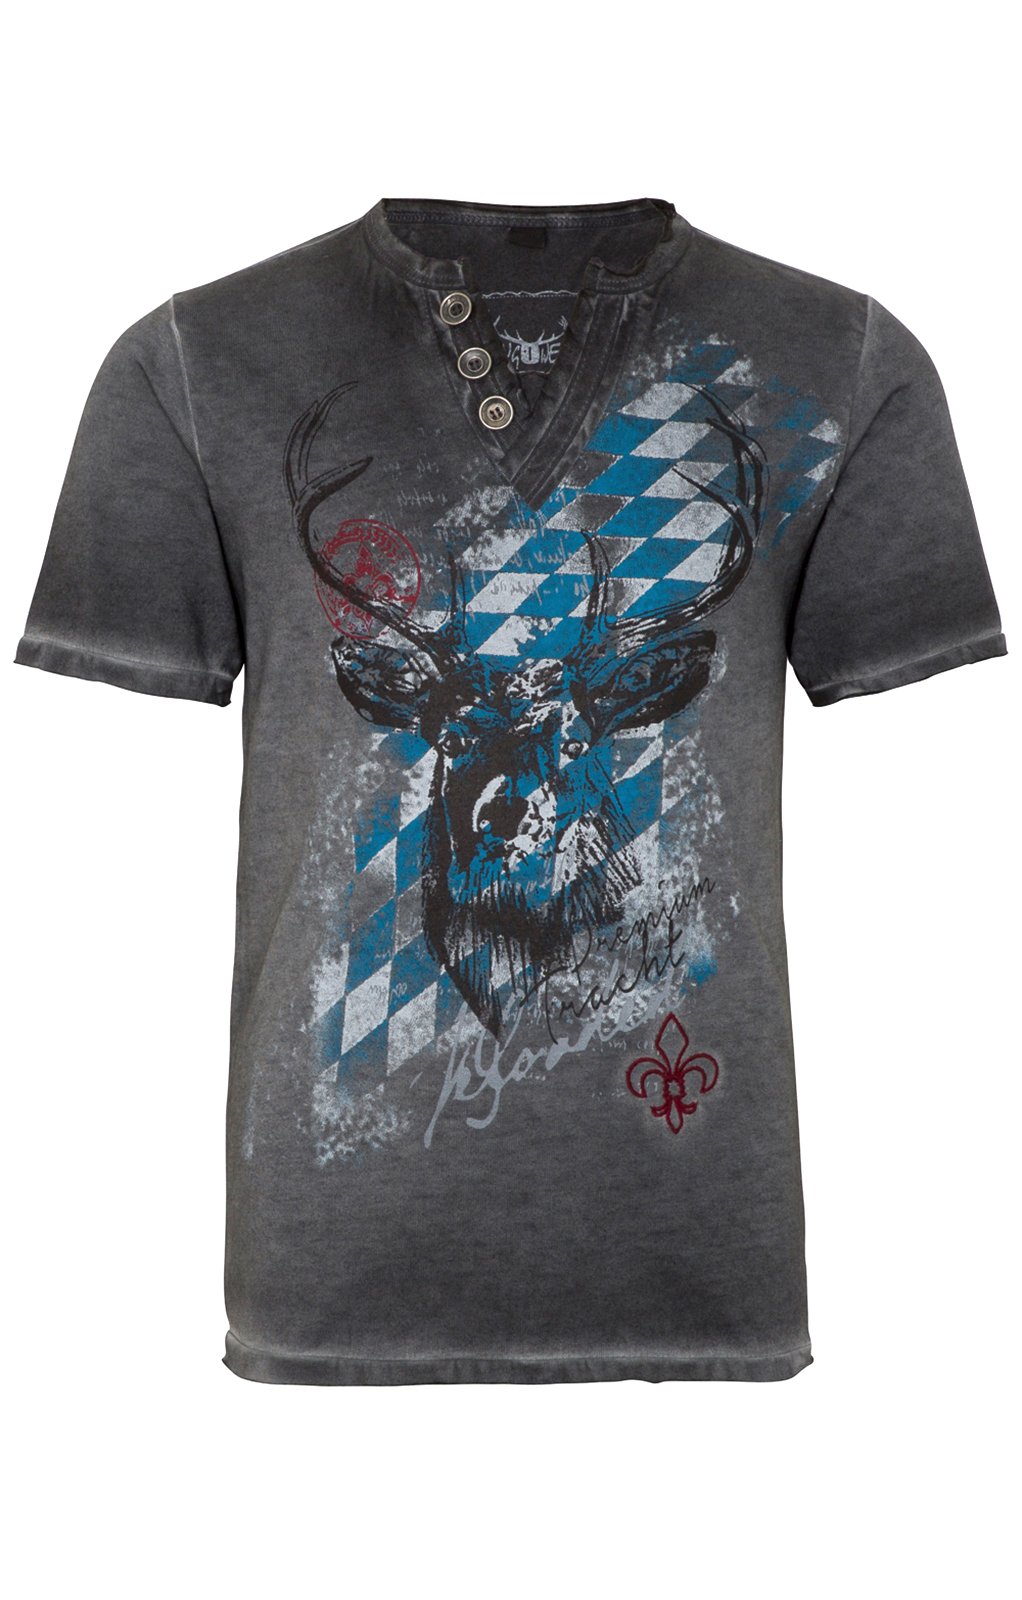 weitere Bilder von Trachten Shirt FERDI Bavaria gray